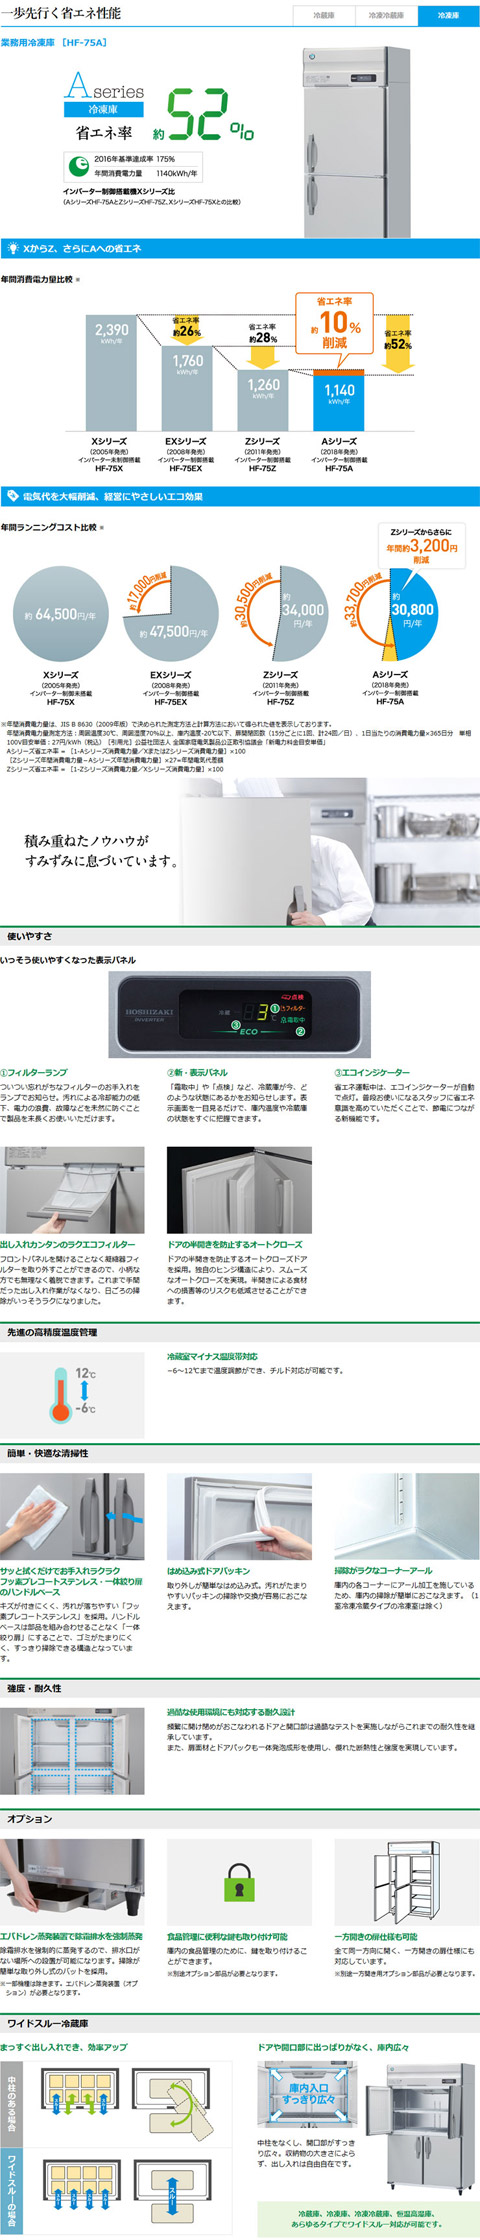 ホシザキ・星崎 縦型インバーター冷凍庫 型式：HF-63AT3-1送料無料（メーカーより直送）メーカー保証付 :R0301021:空調店舗厨房センター  通販 